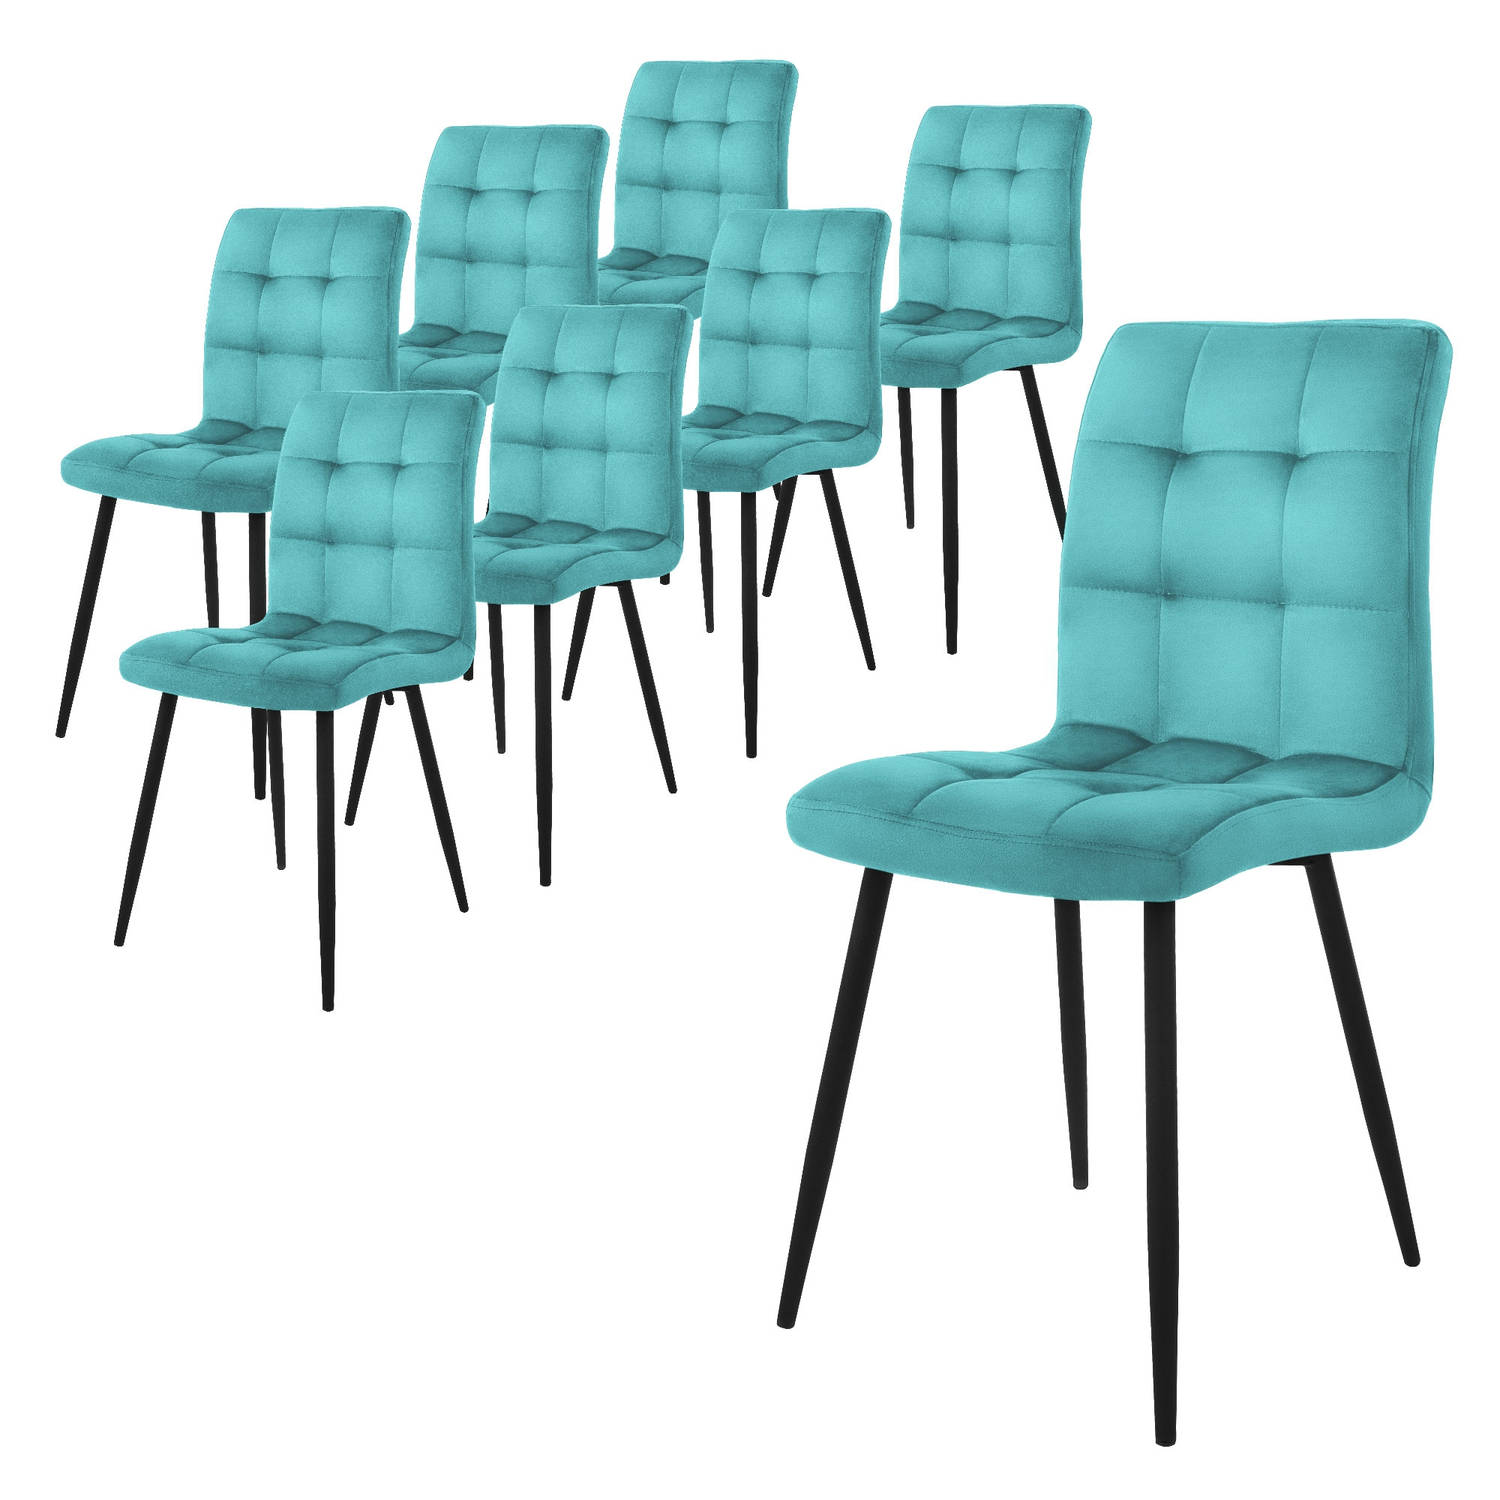 ML-Design eetkamerstoelen set van 8, petrol, keukenstoel met fluwelen bekleding, woonkamerstoel met rugleuning, gestoffeerde stoel met metalen poten, ergonomische stoel voor eettaf